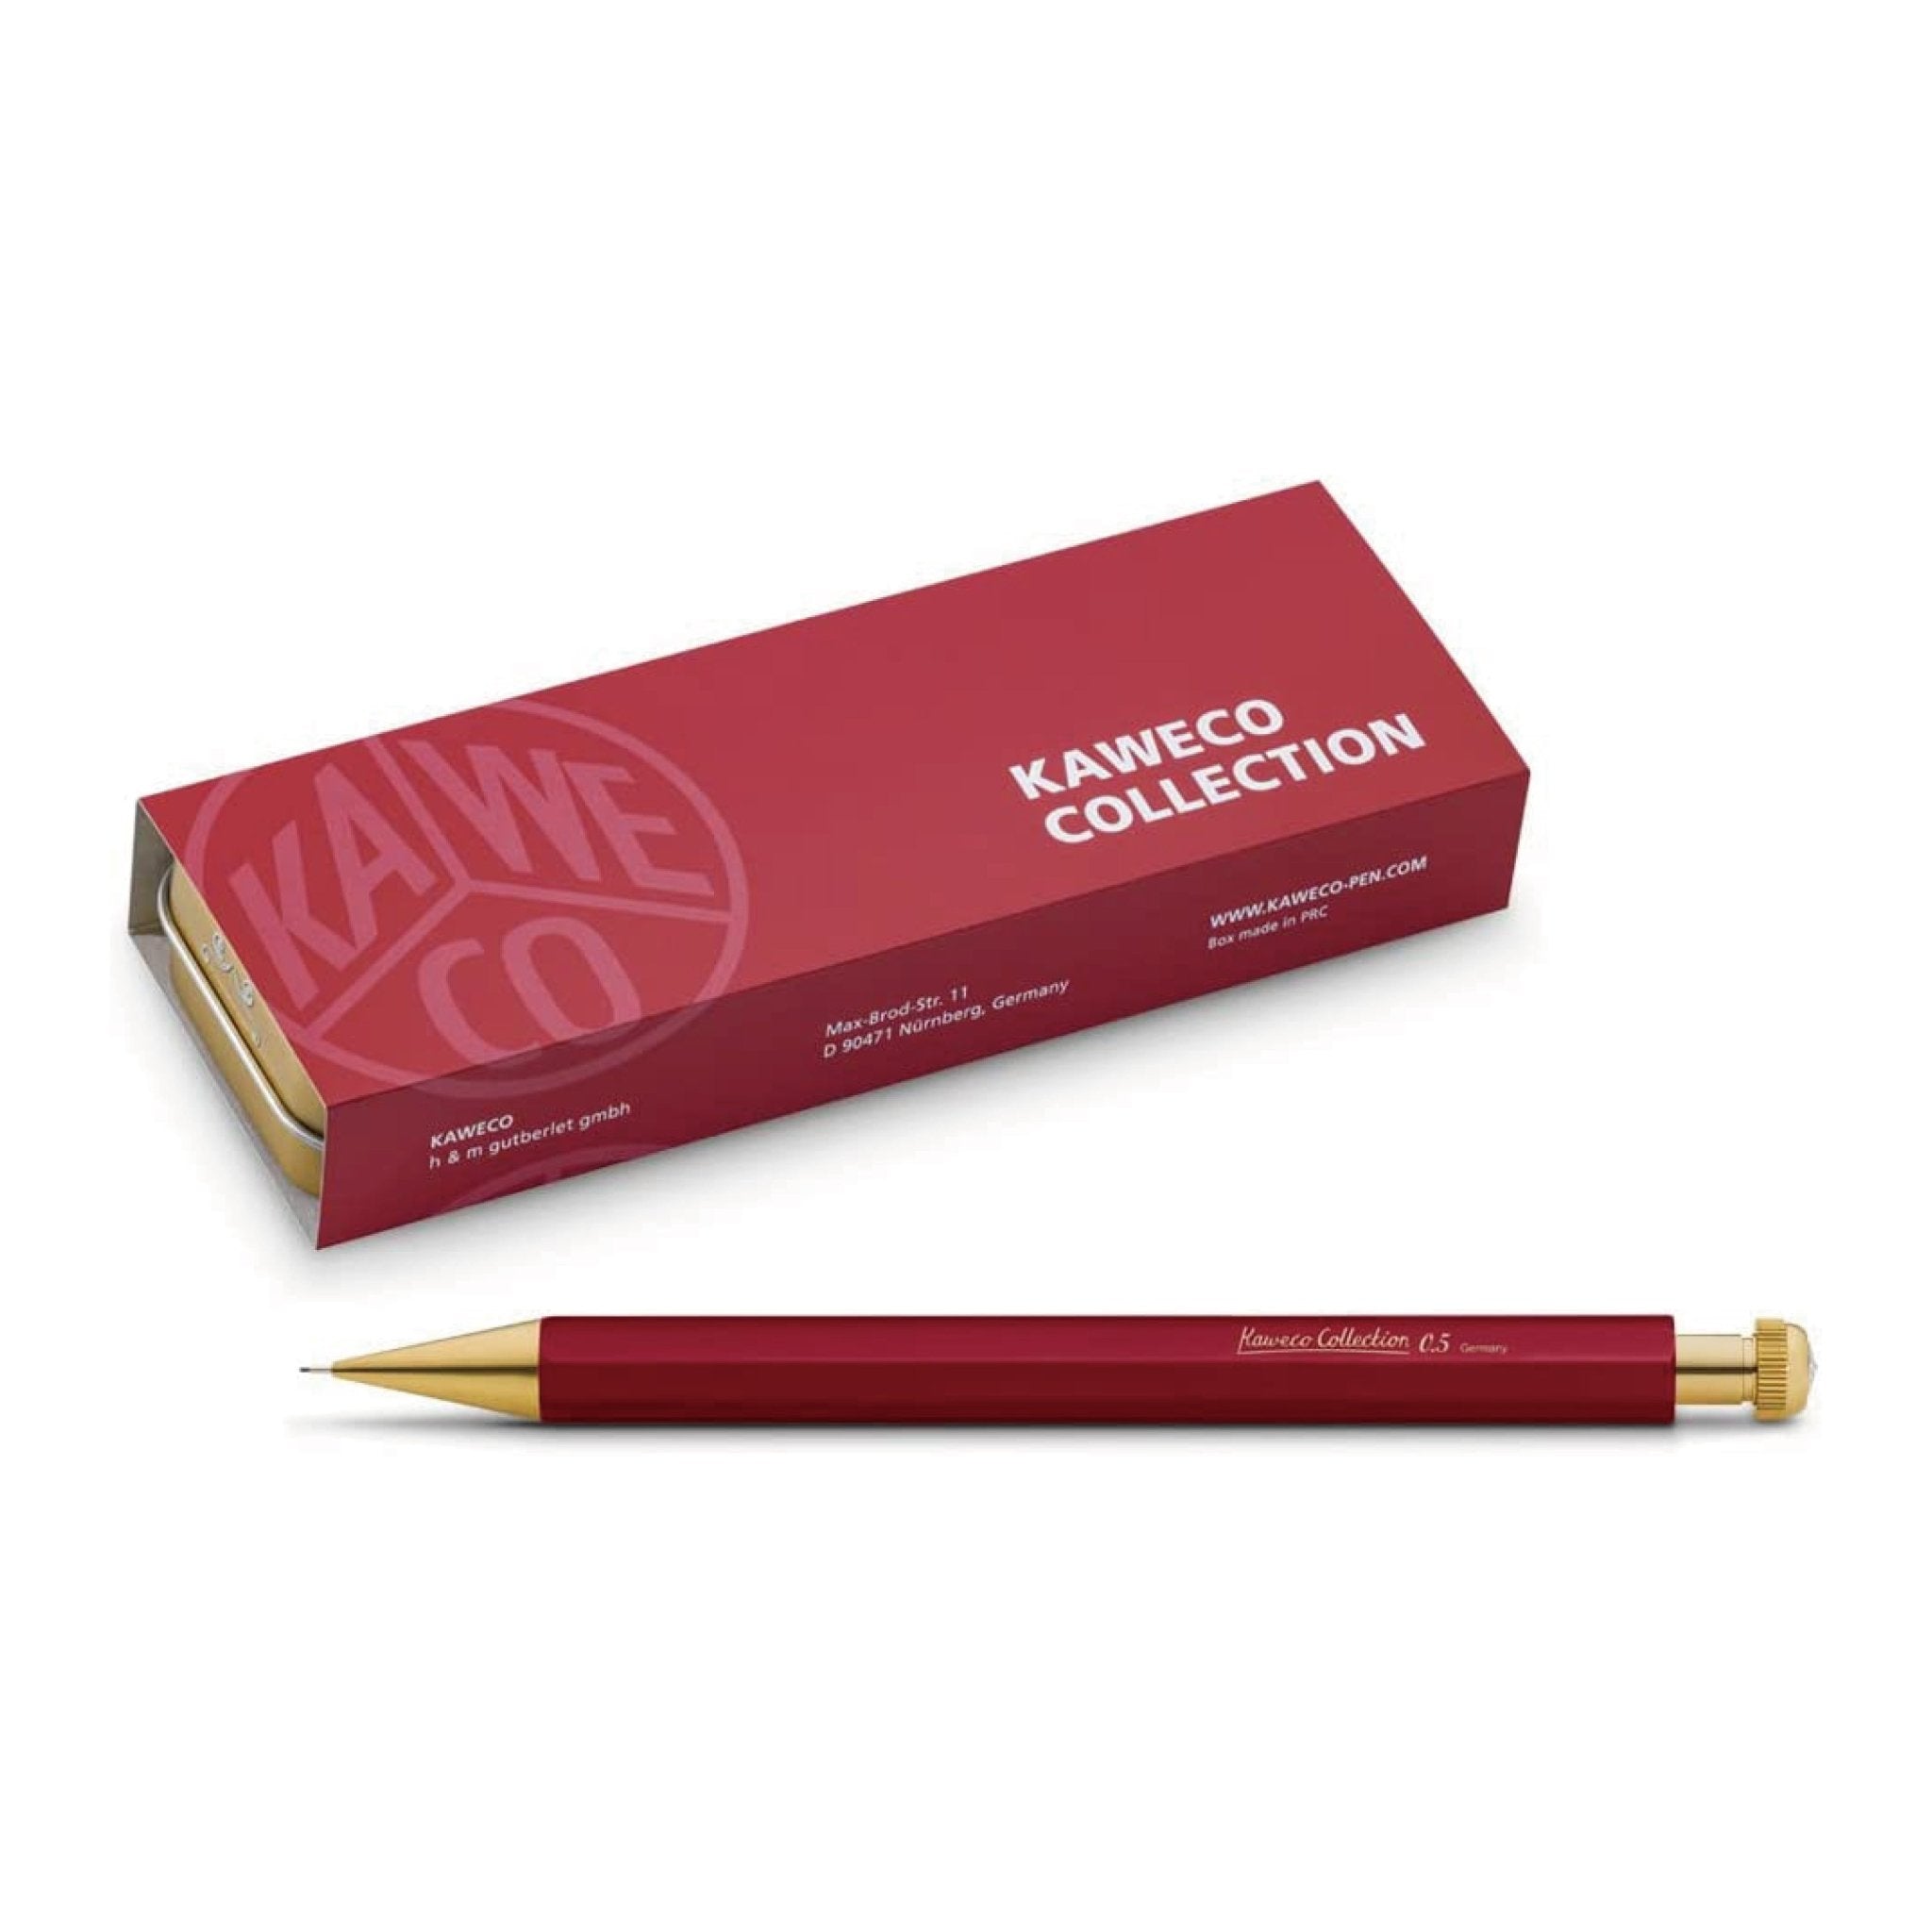 カヴェコ kaweco スペシャル ブルー 0.5mm シャーペン シャープペン-